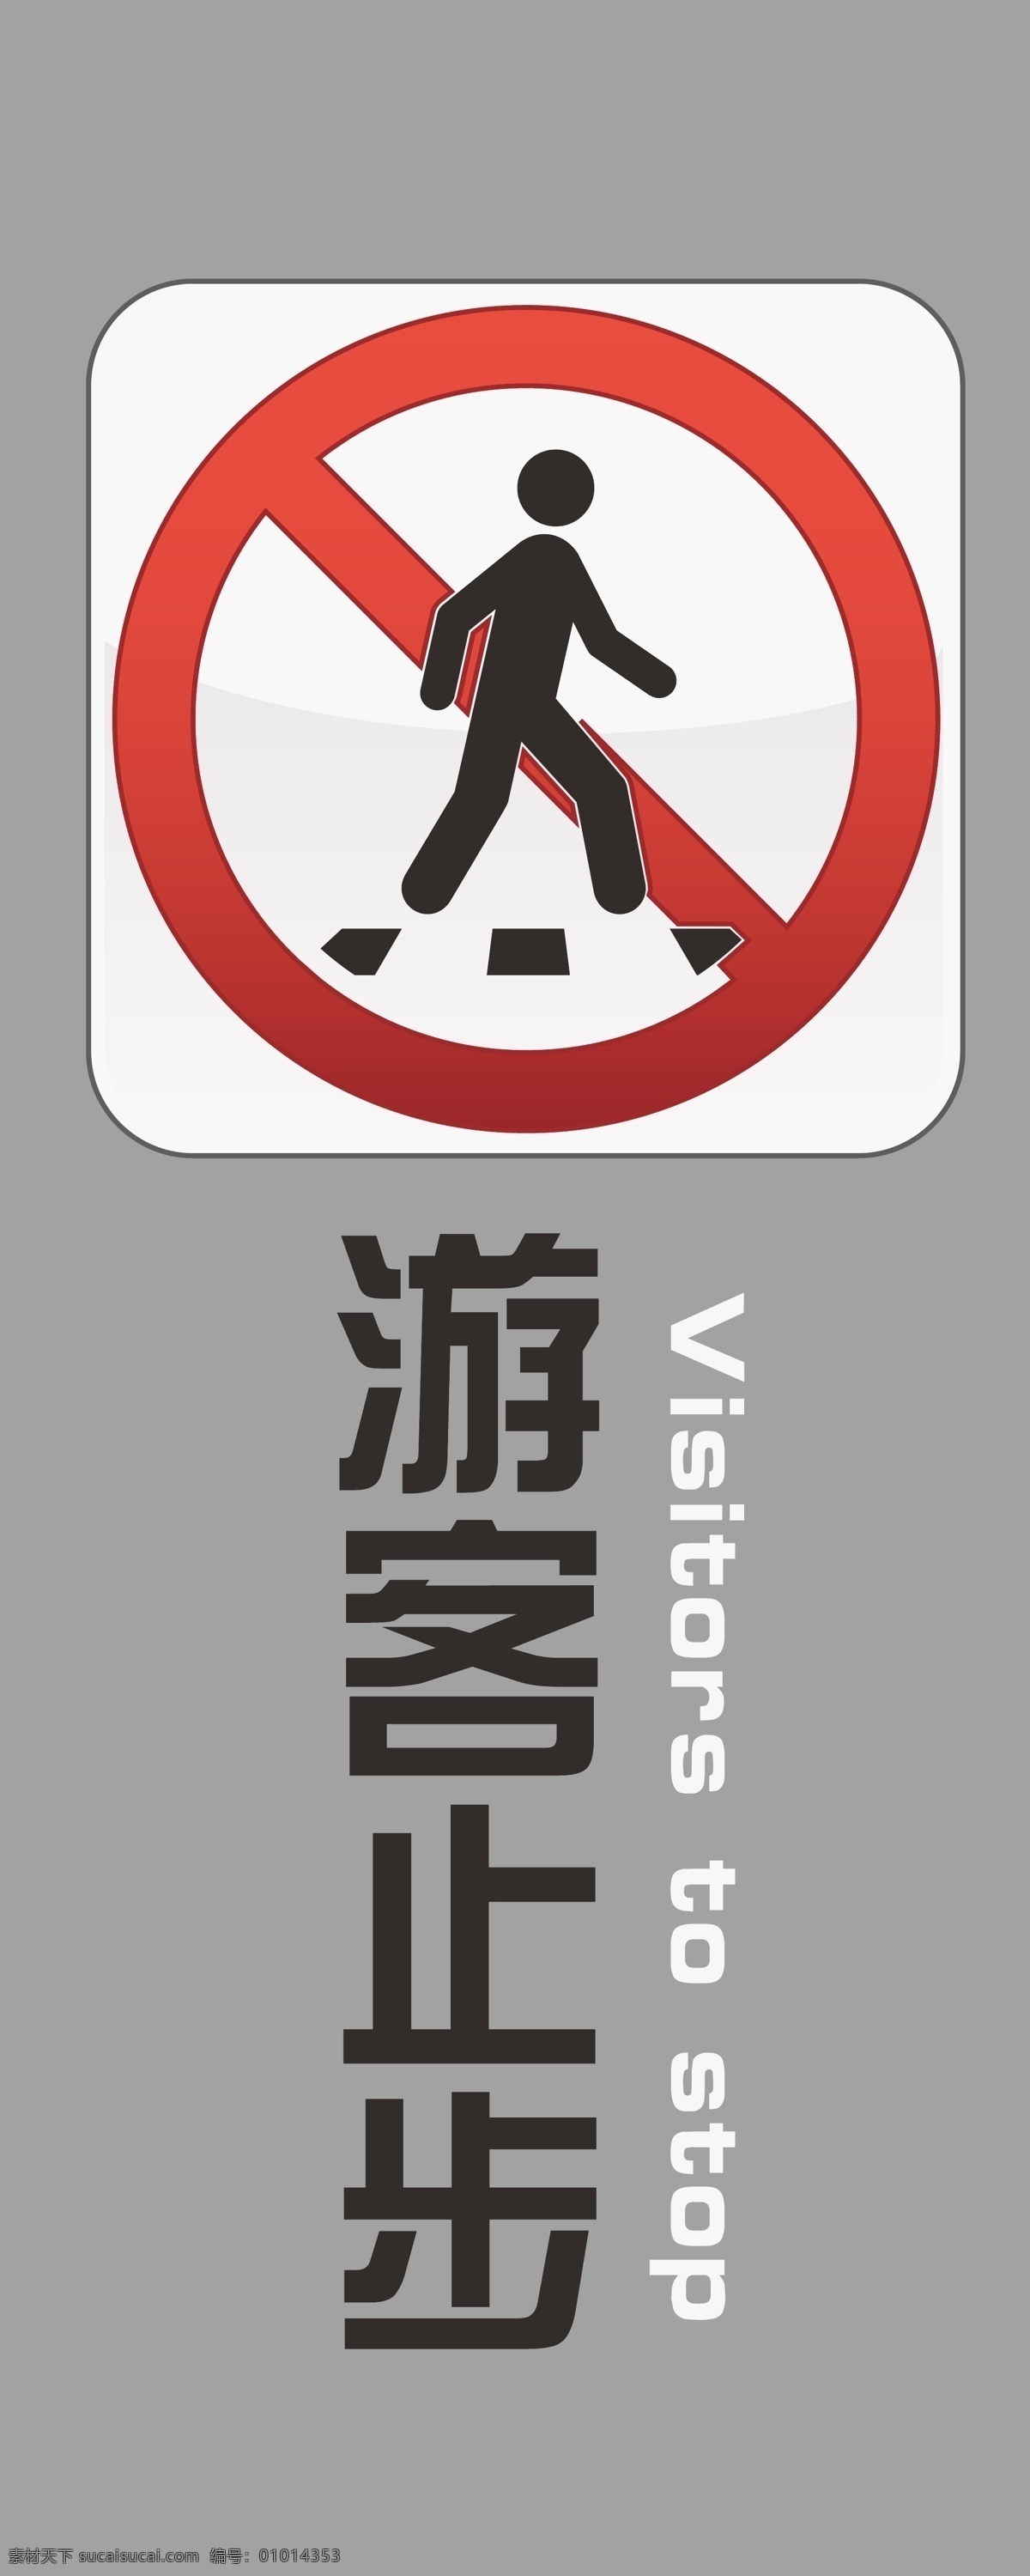 游客 止步 标识 牌 游客止步 英文 公共标识标志 标识标志图标 矢量